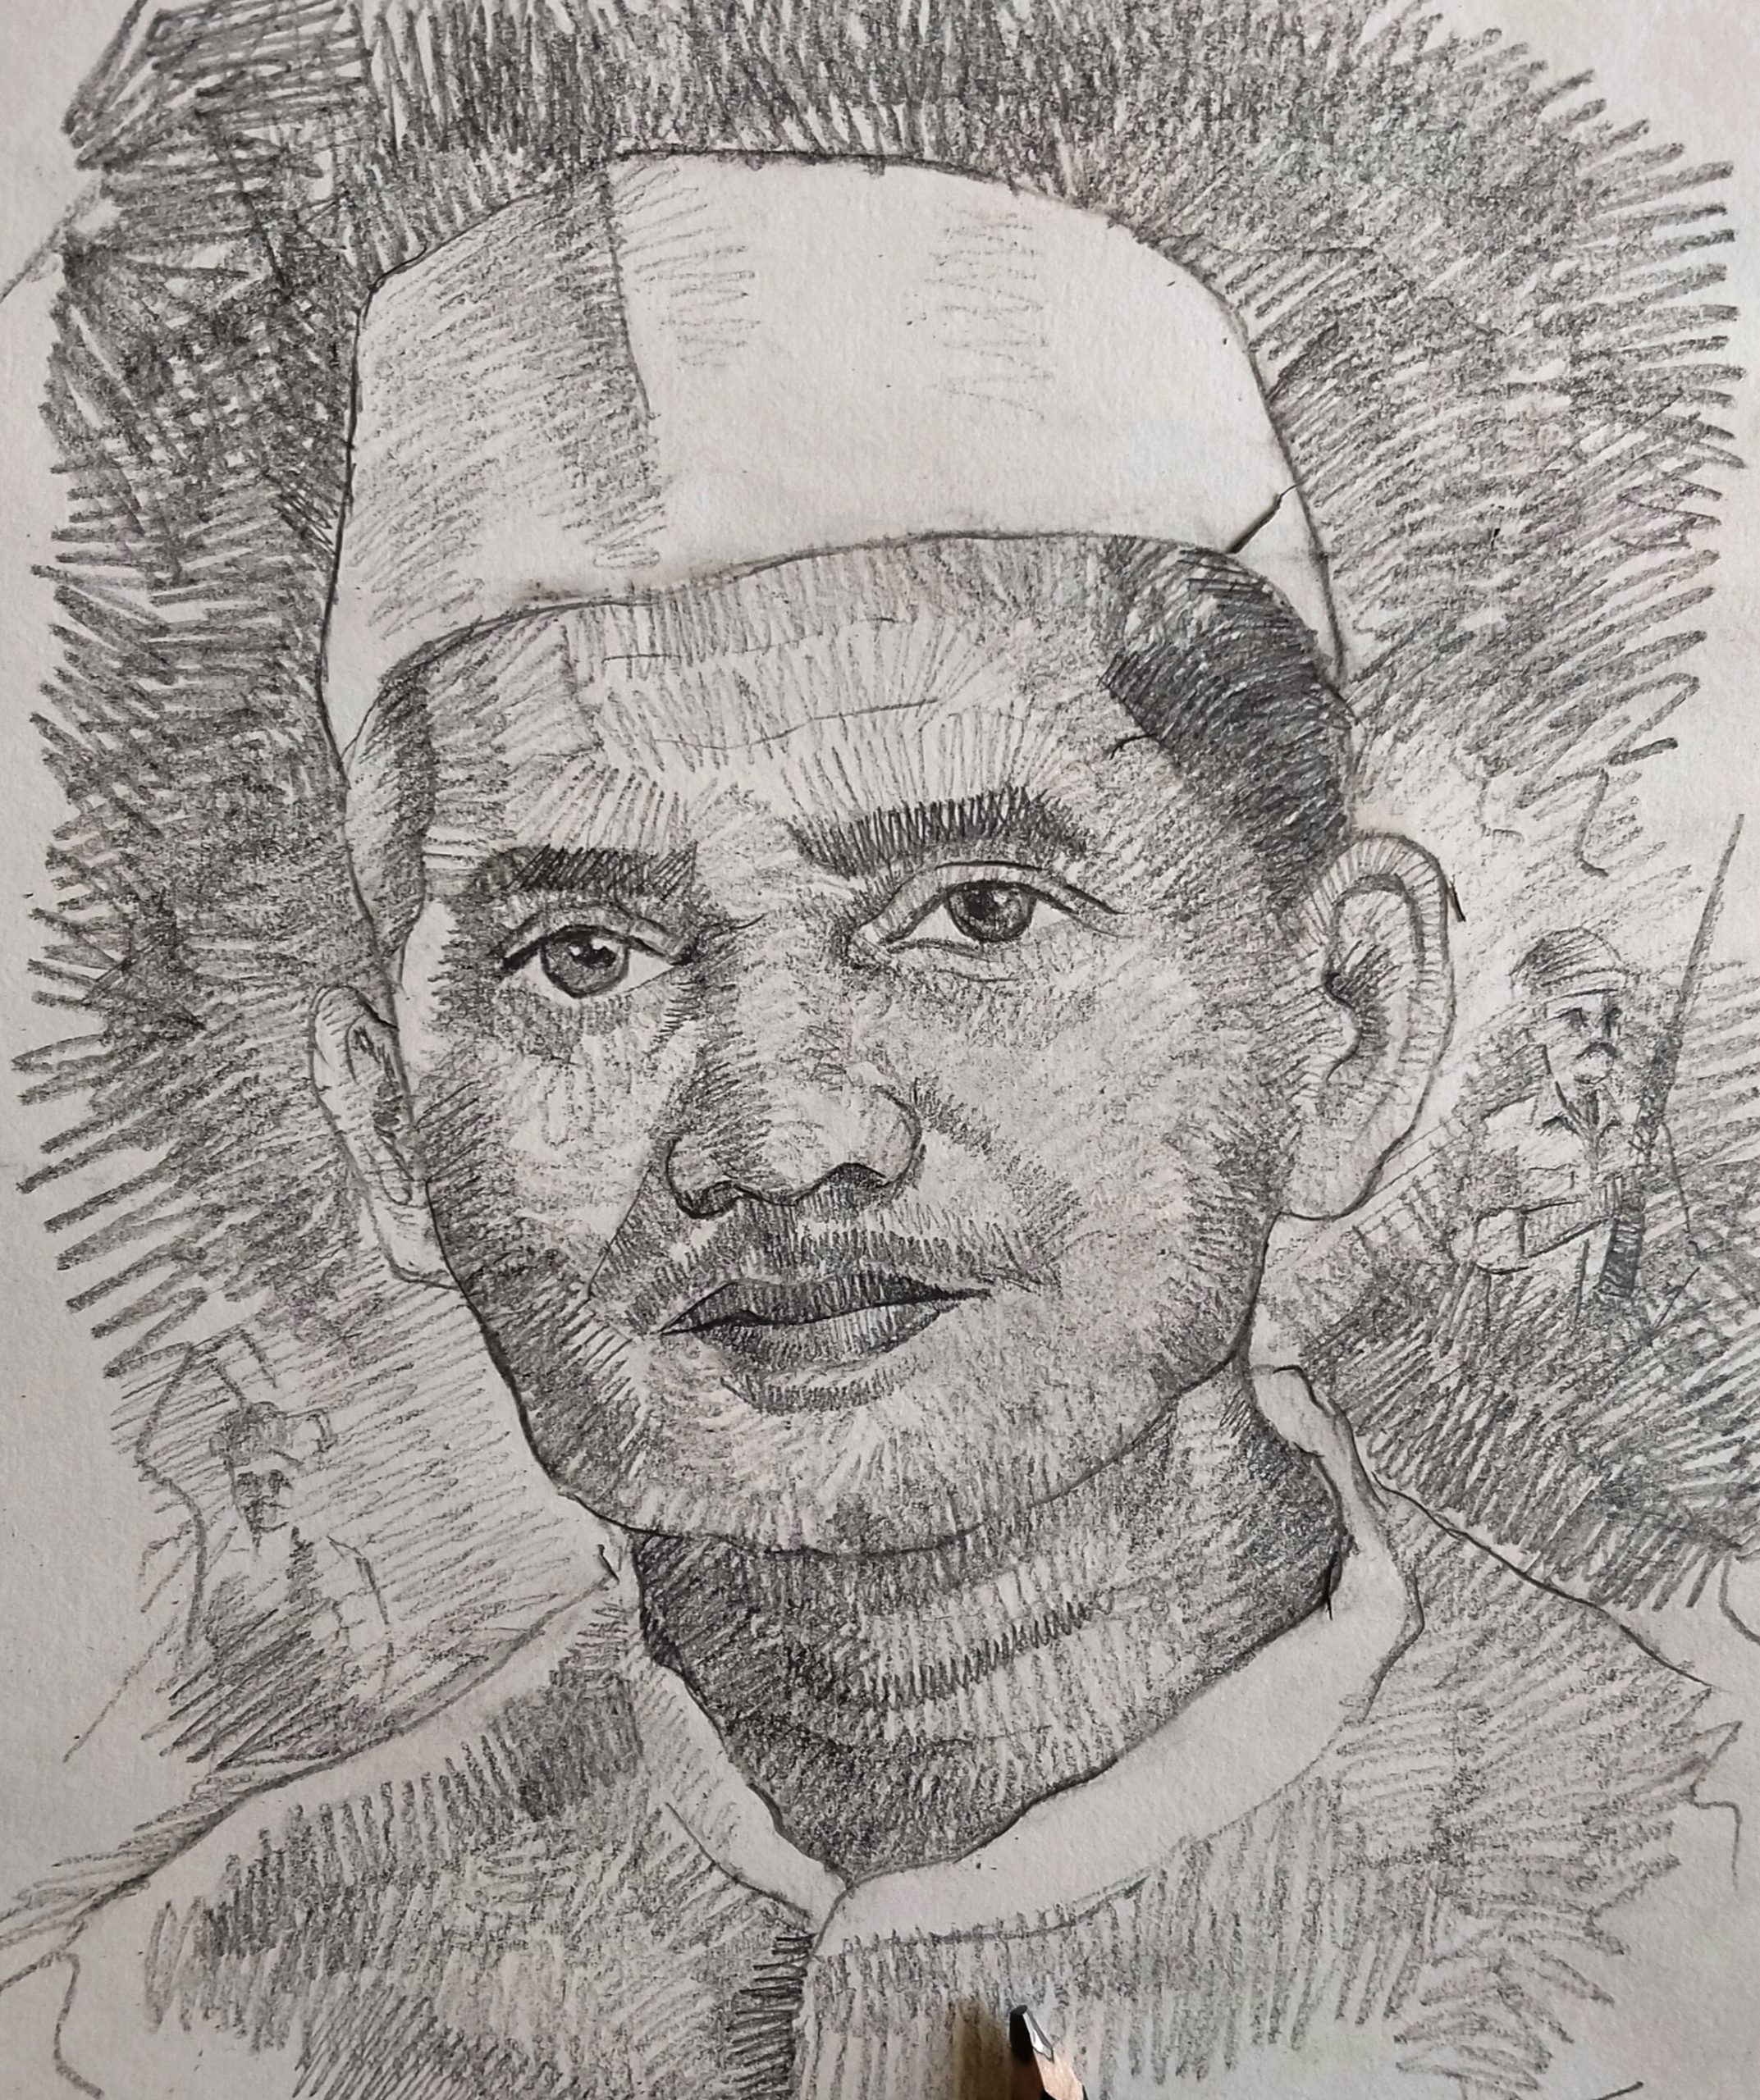 Lal Bahadur Shastri portrait